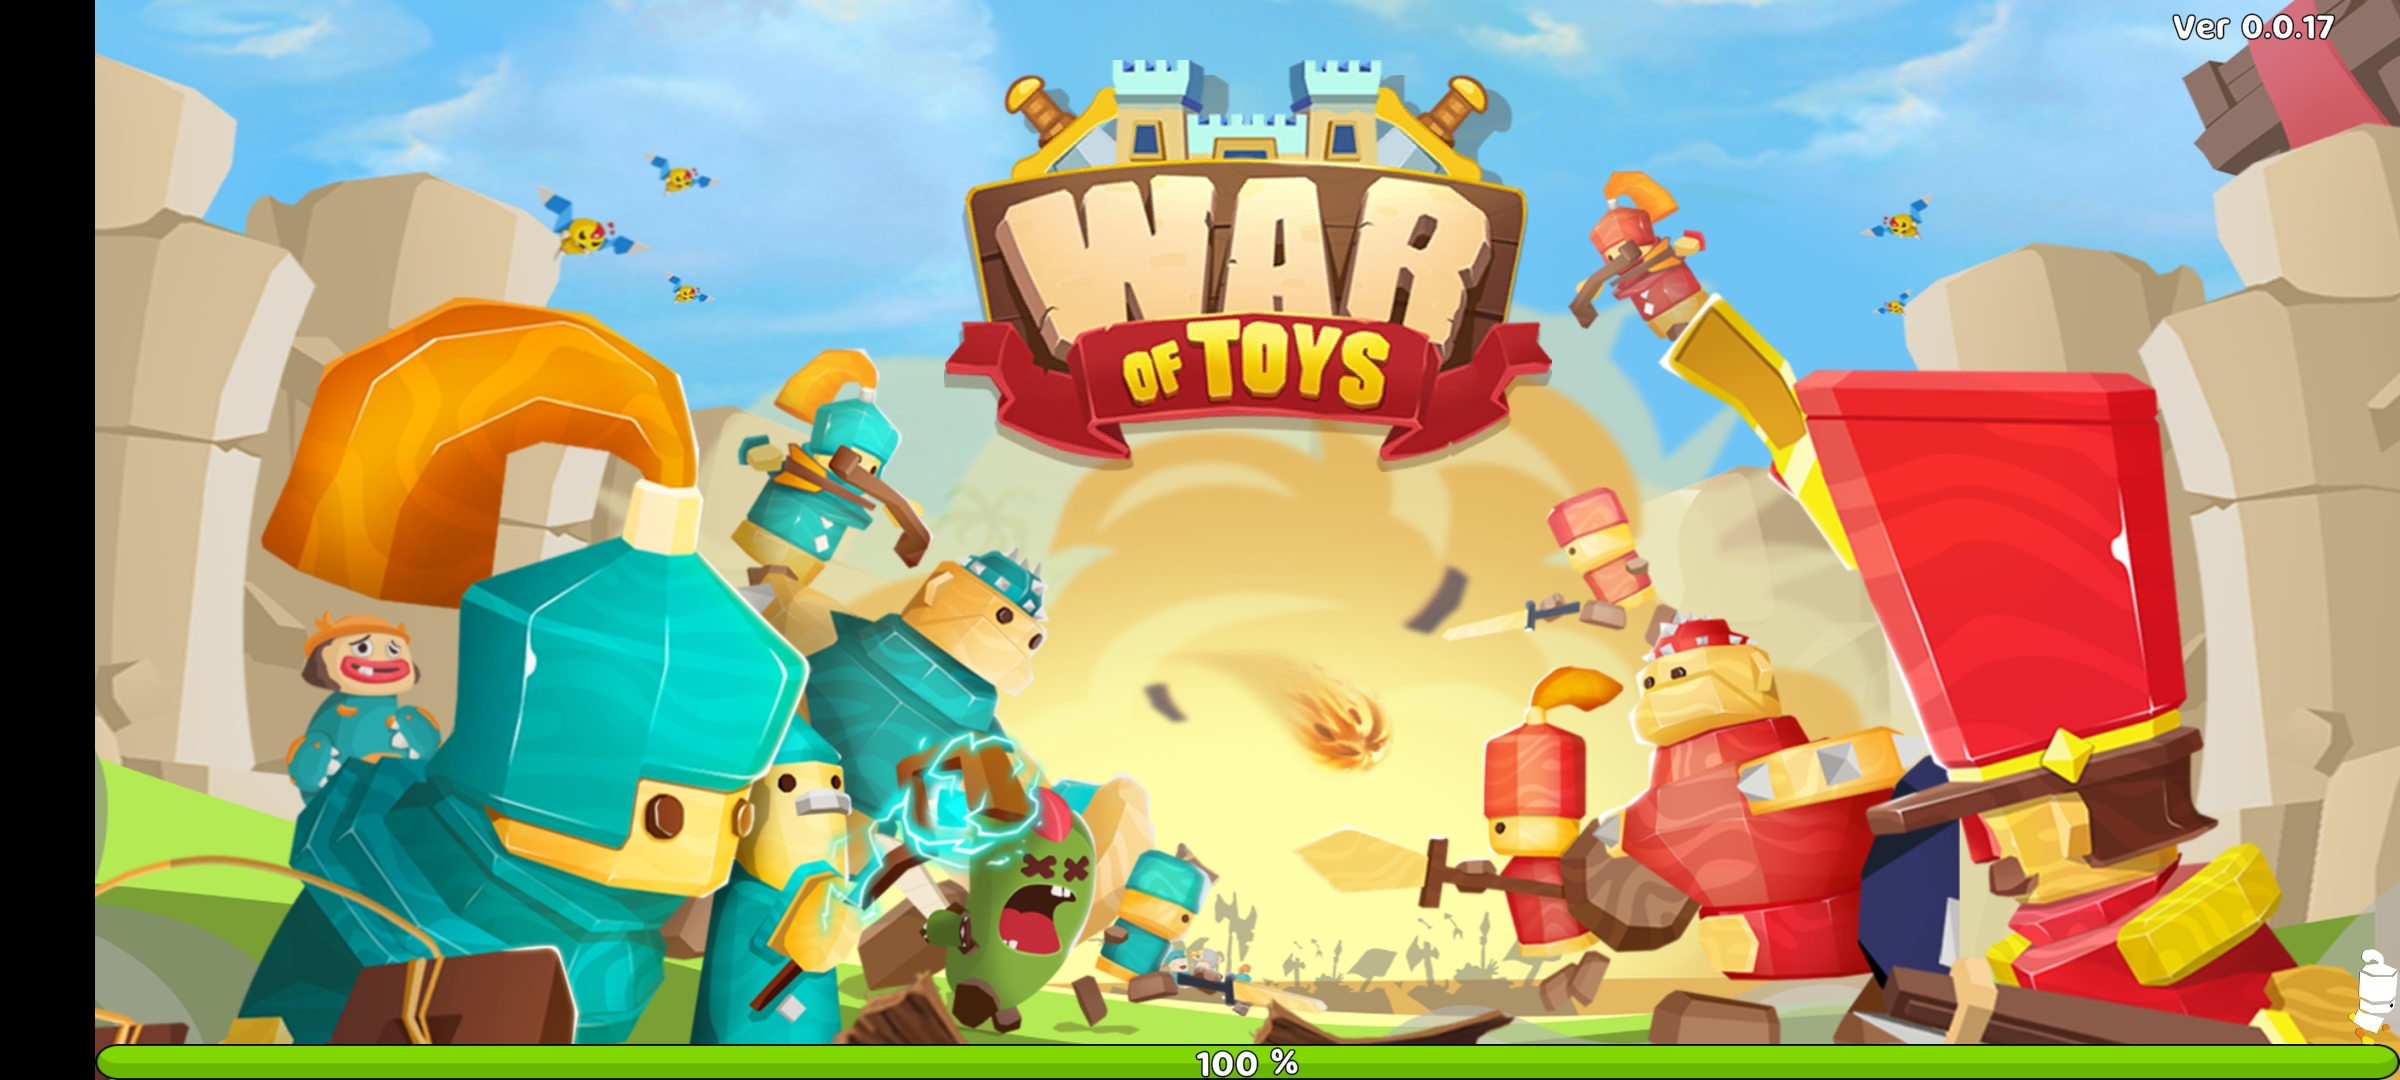 玩具战争最新版下载 v0.0.17安卓版 1